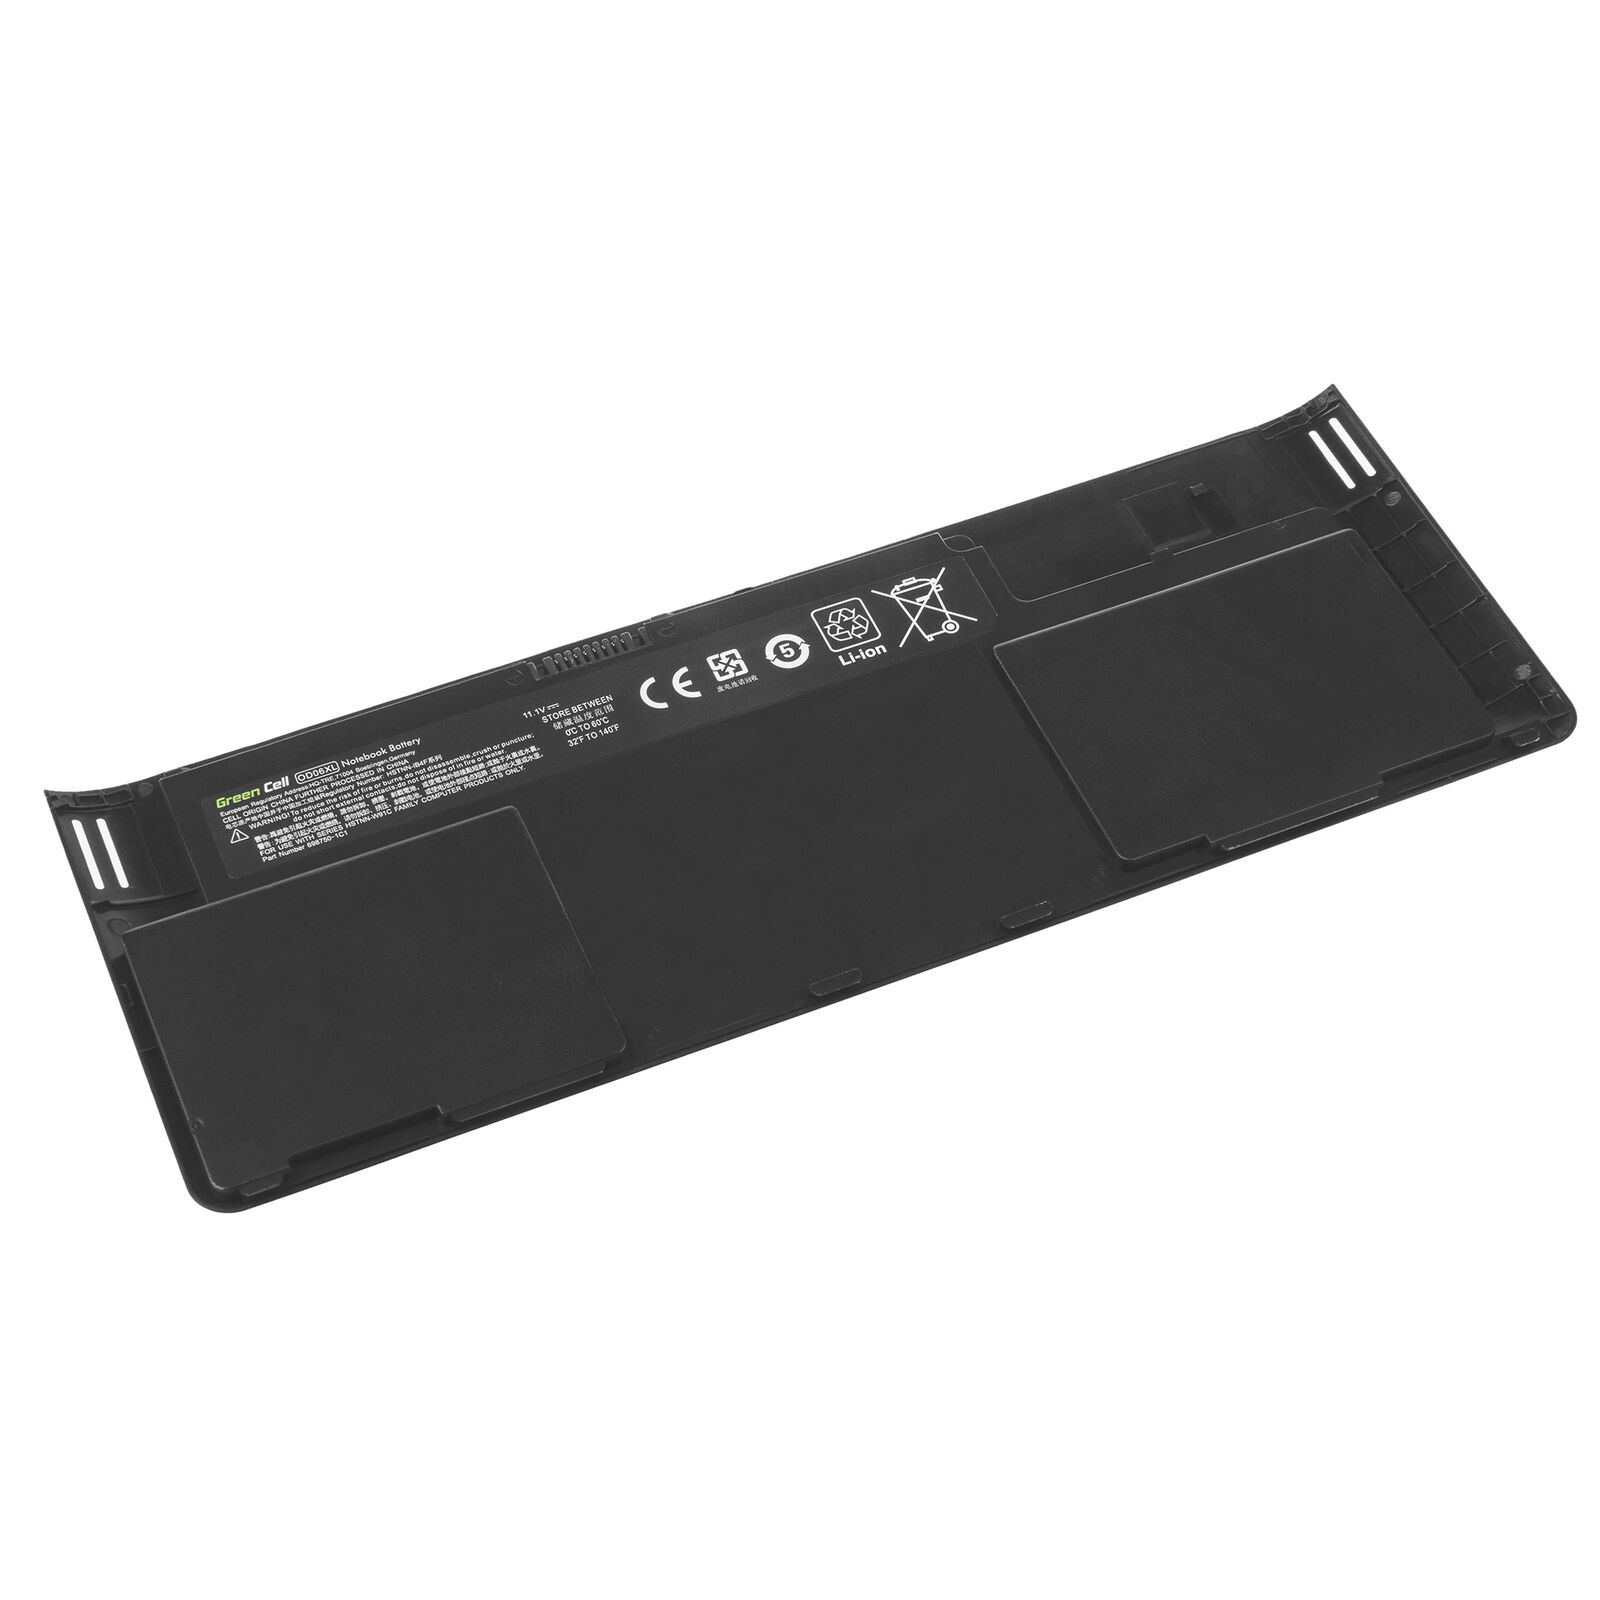 Bateria para HP Revolve 810, Tablet PC, H6L25AA, OD06XL HSTNN-IB4F